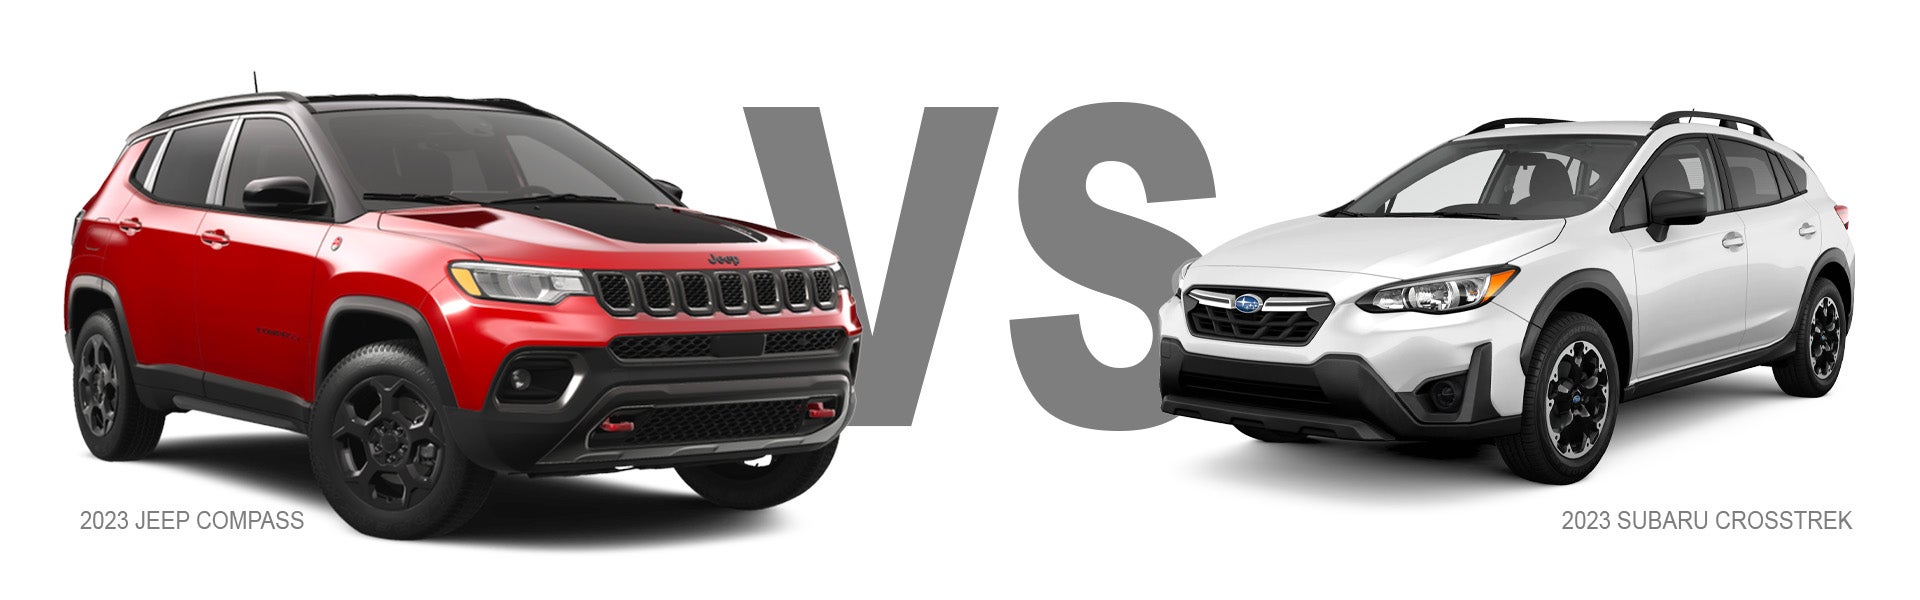 Jeep Compass vs Subaru Crosstrek CUV Comparison